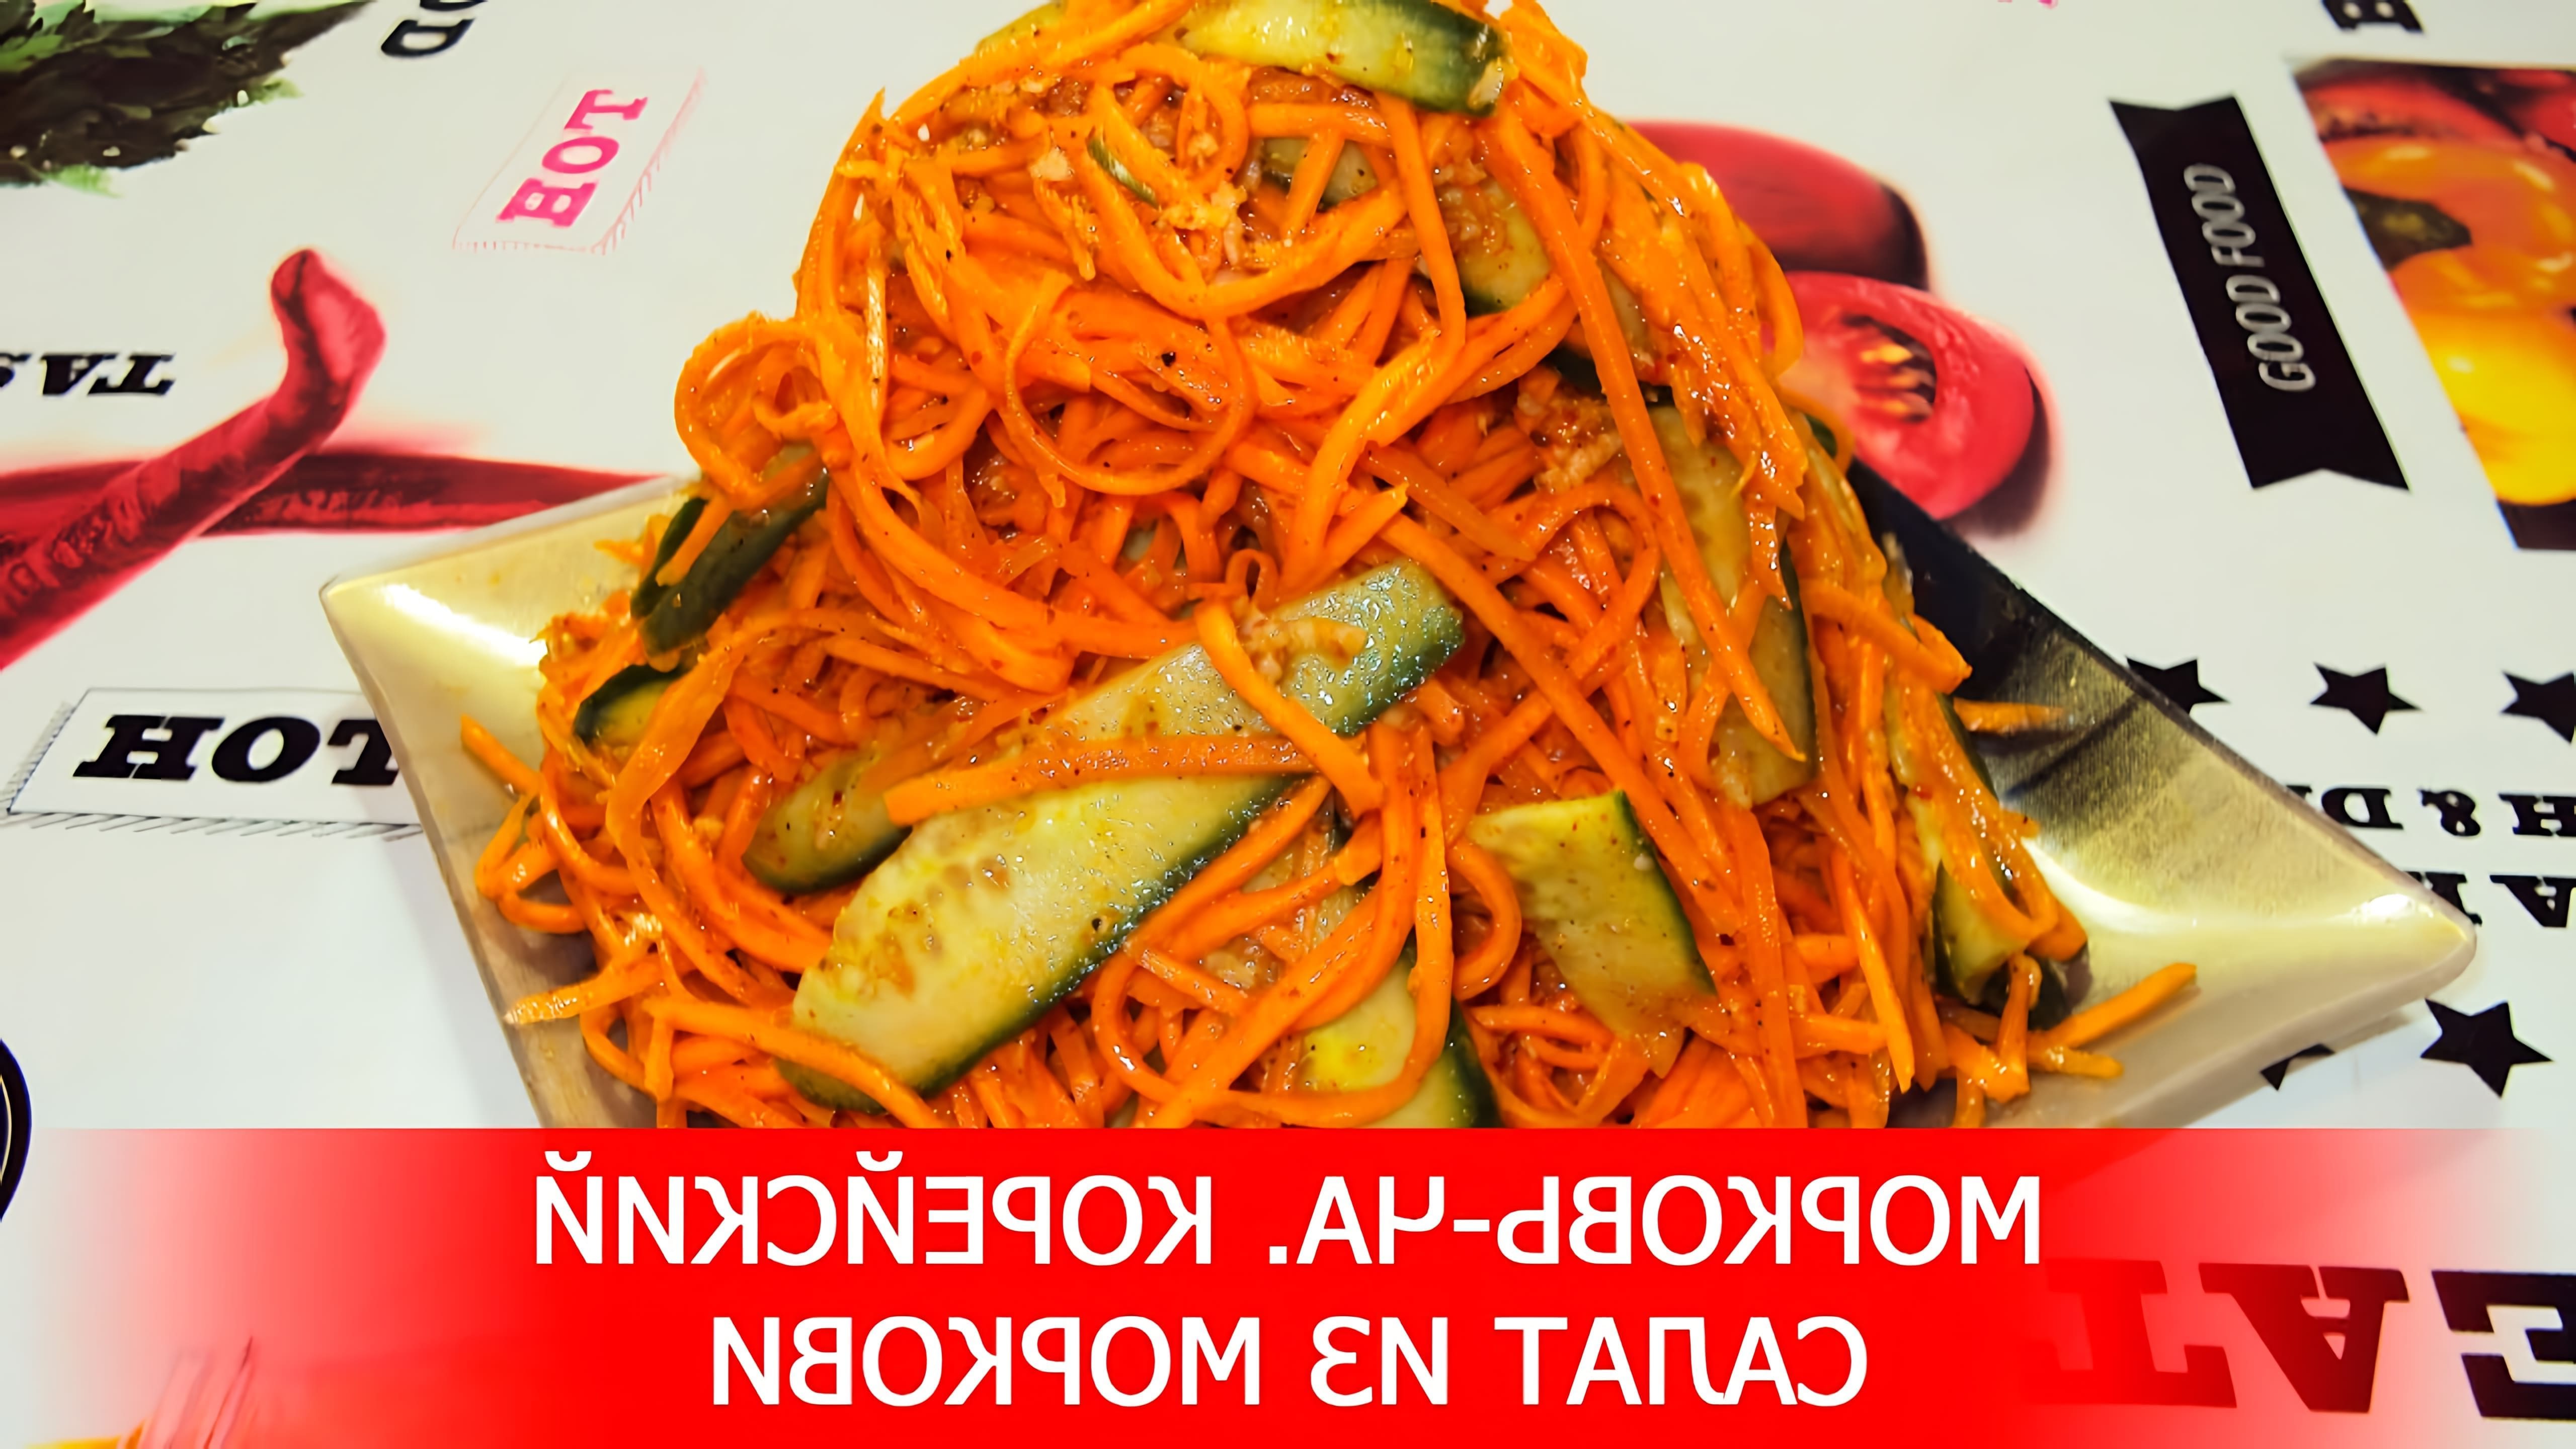 В этом видео демонстрируется процесс приготовления корейского салата из моркови, который называется "морковча"